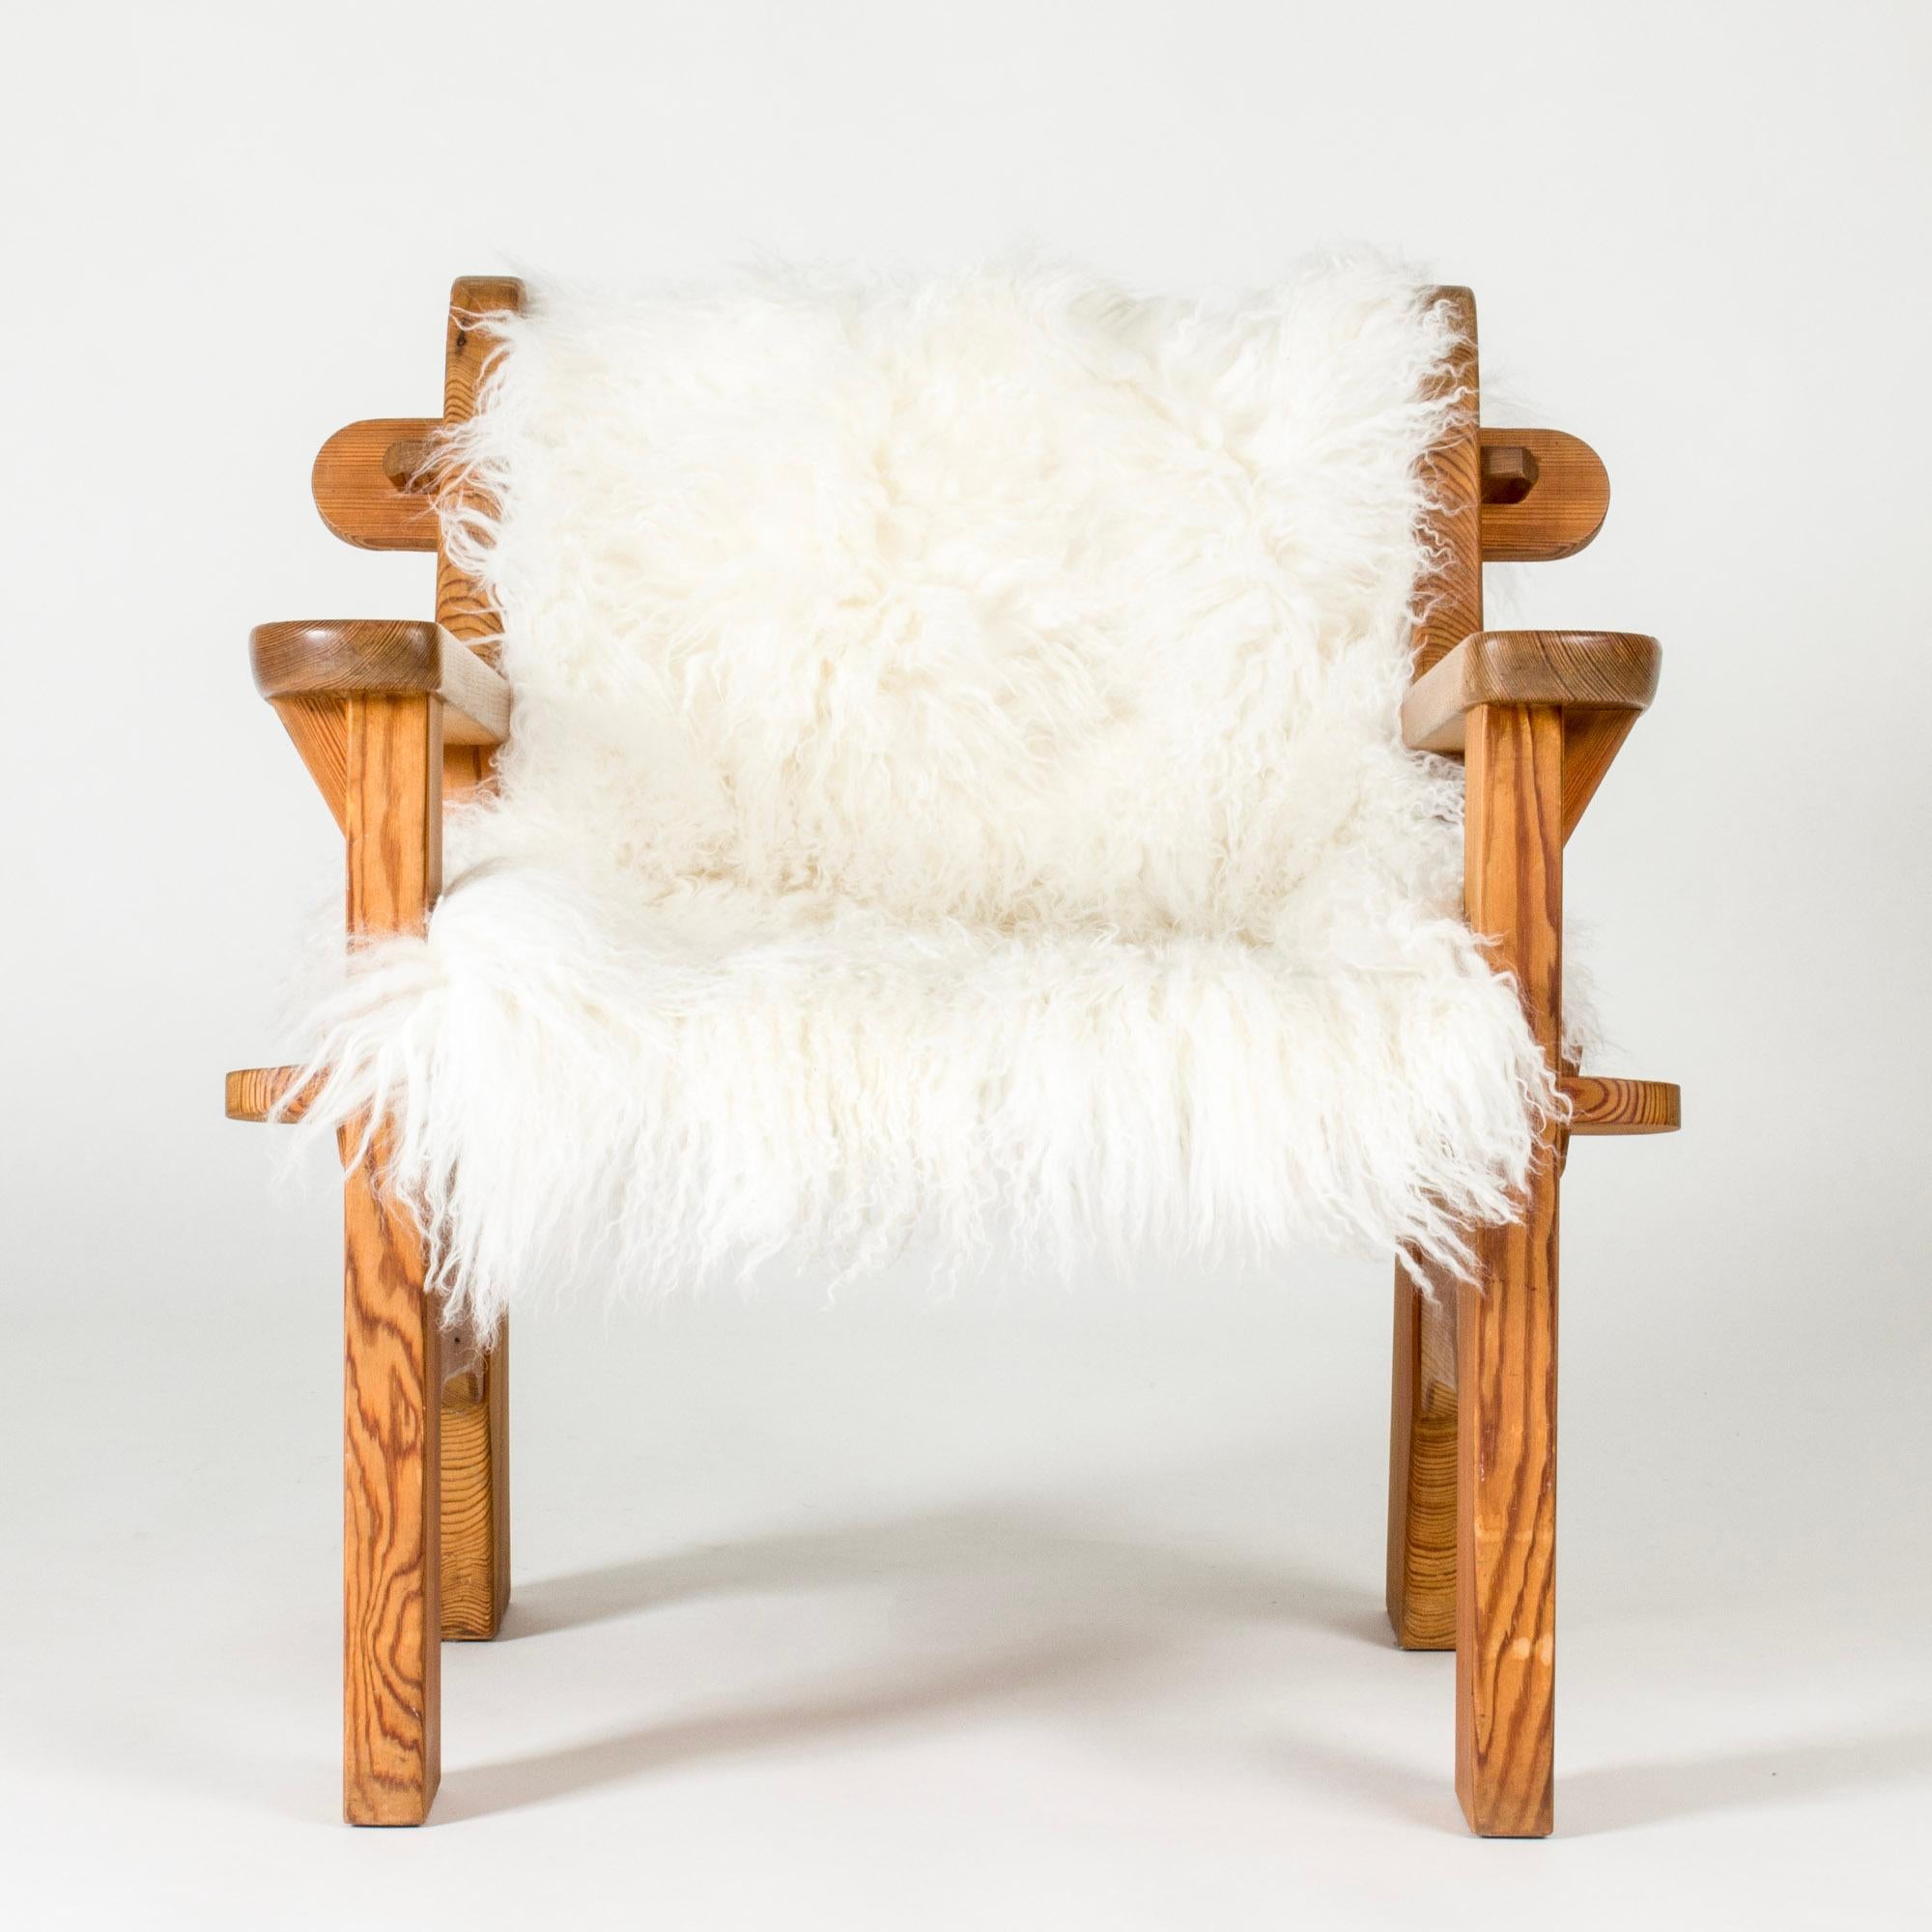 Chaise longue de David Rosén, en pin, au design rustique et épais. Détails arrondis, joli grain de bois. Livré avec une peau de mouton détachée.